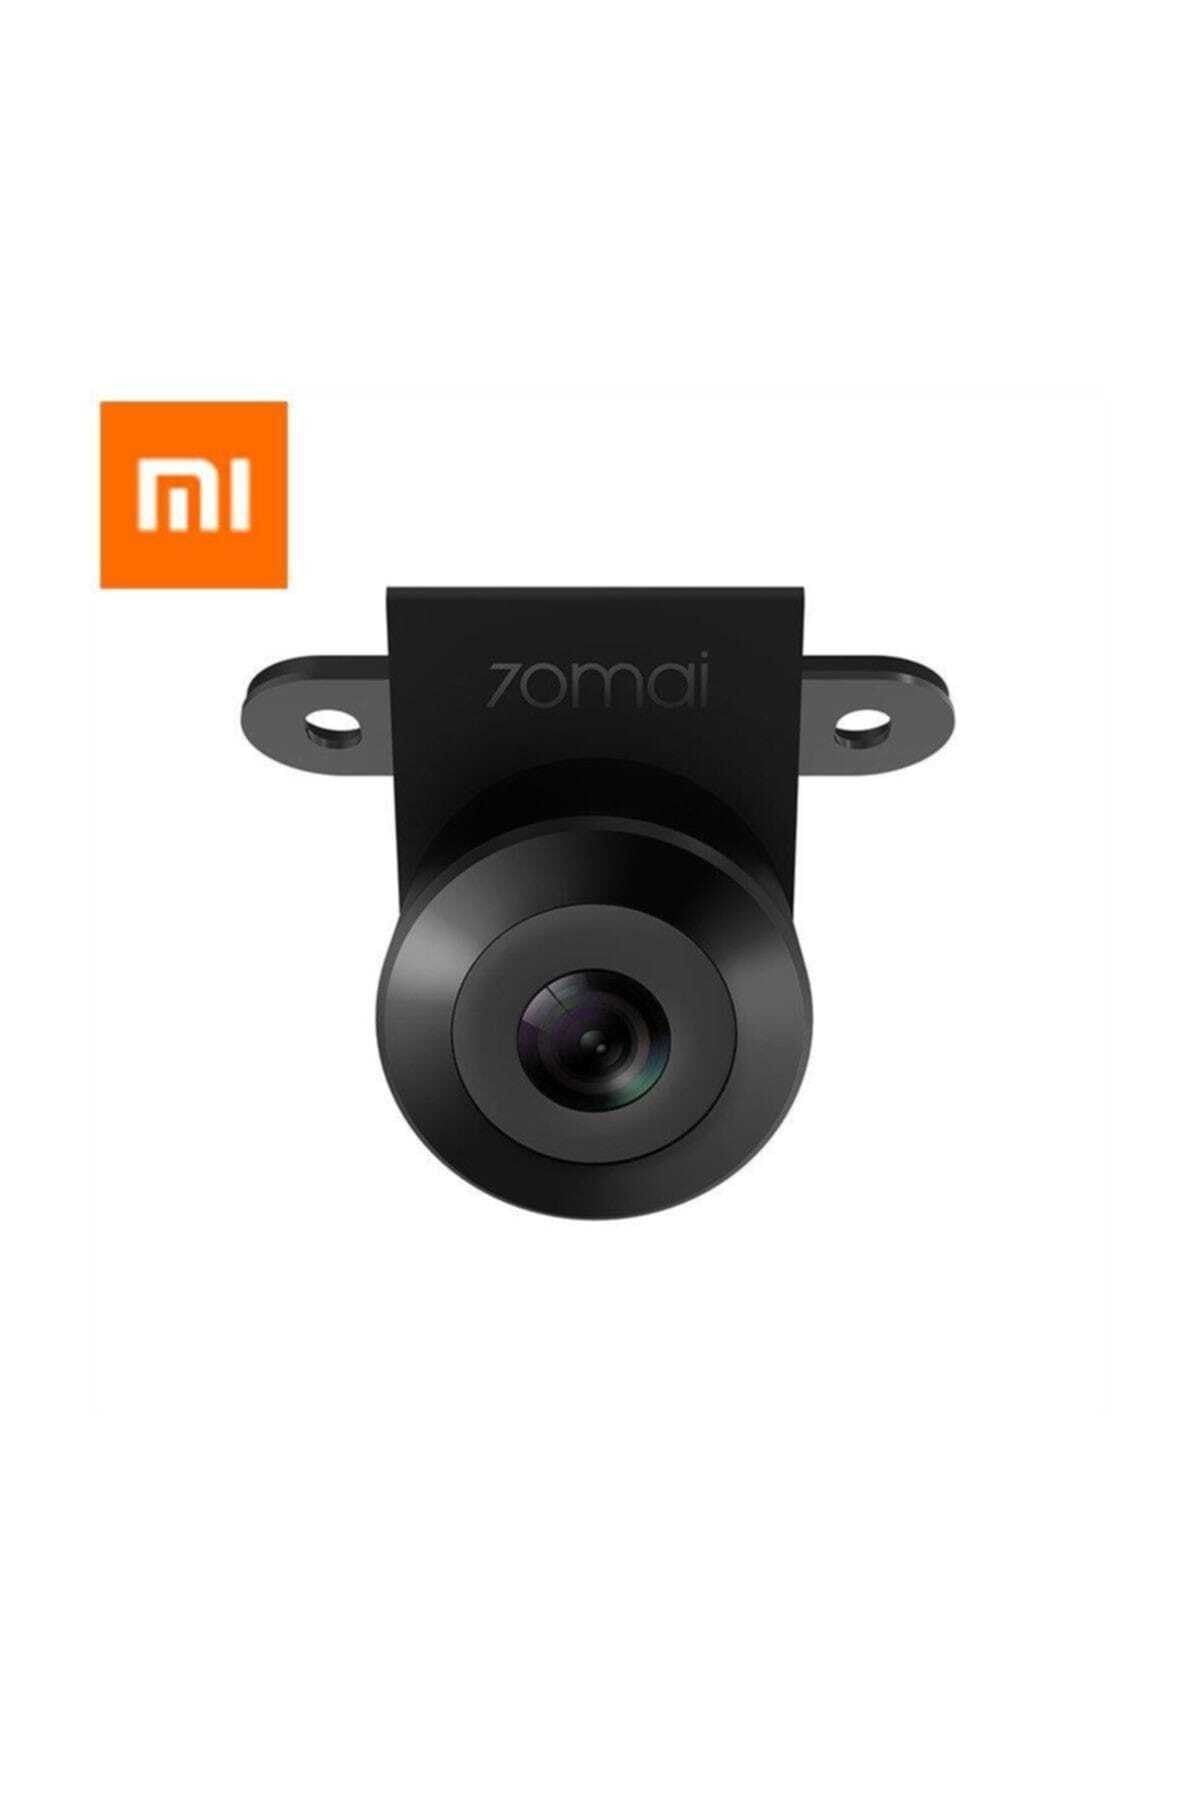 Xiaomi 70mai Gece Görüşlü Oto Araç Arka Kamera